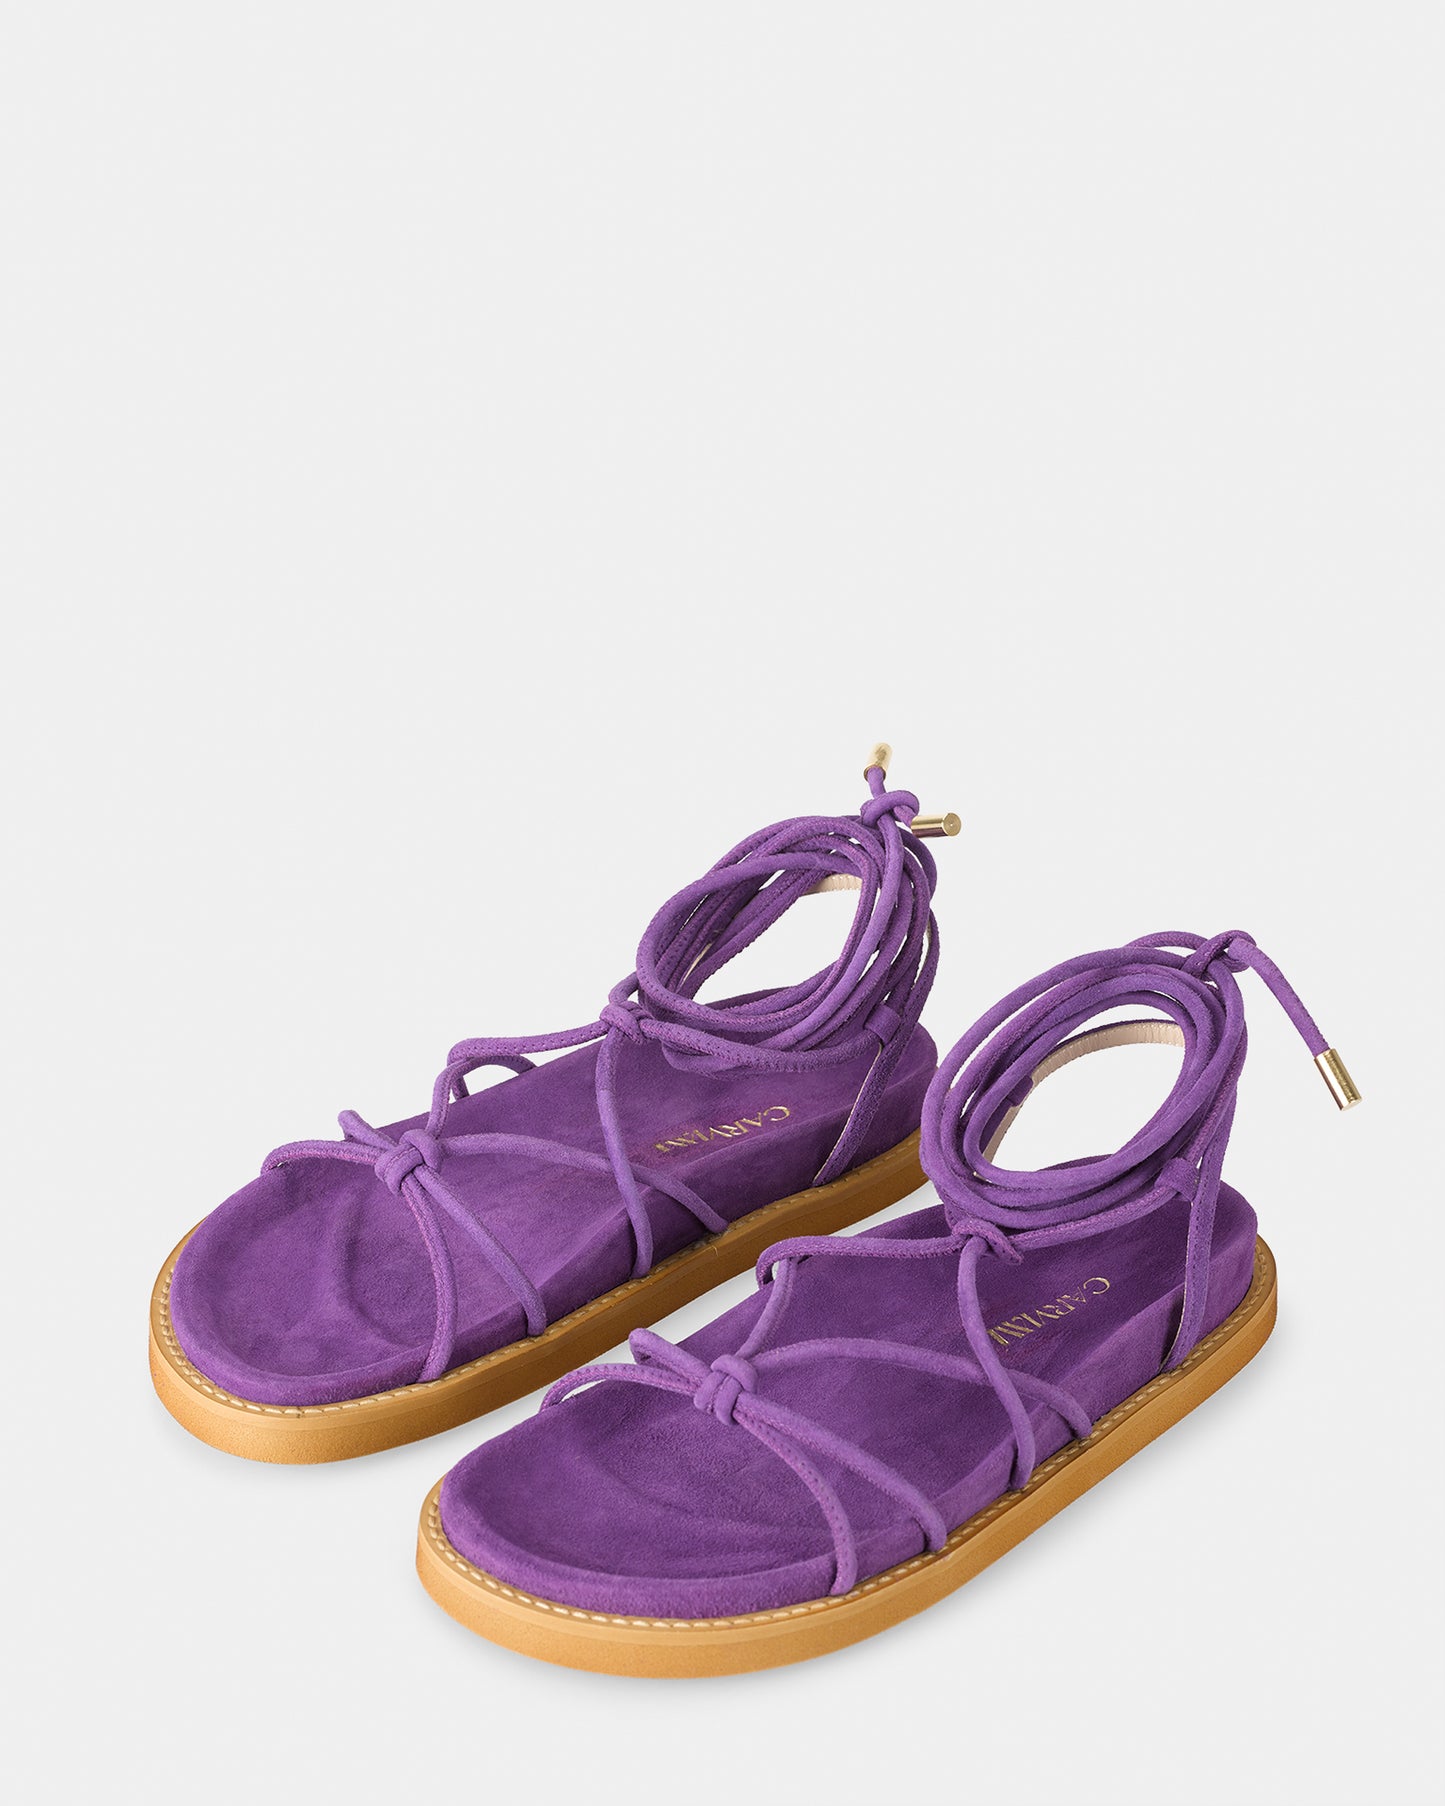 Blueberry Sandals - Bio Sandals